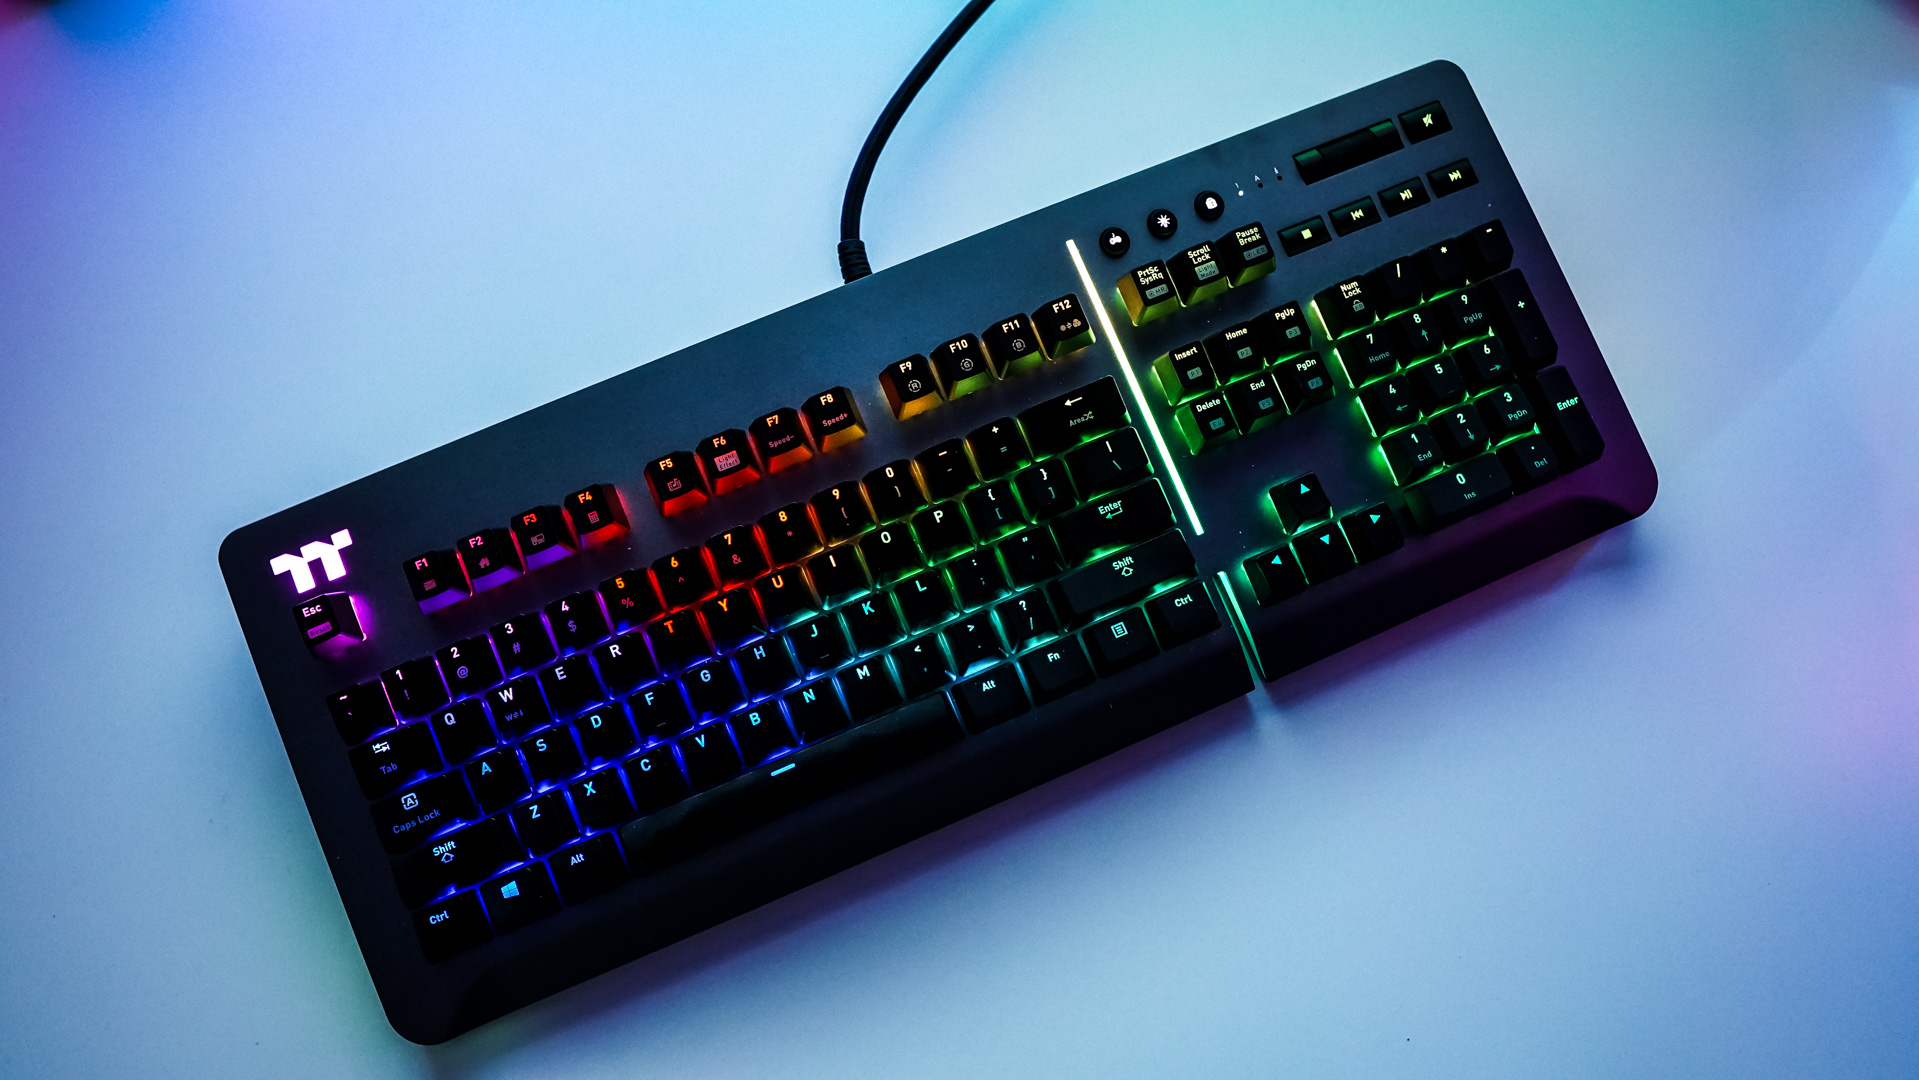 Thermaltake Level 20 RGB Titanium Gaming Keyboard